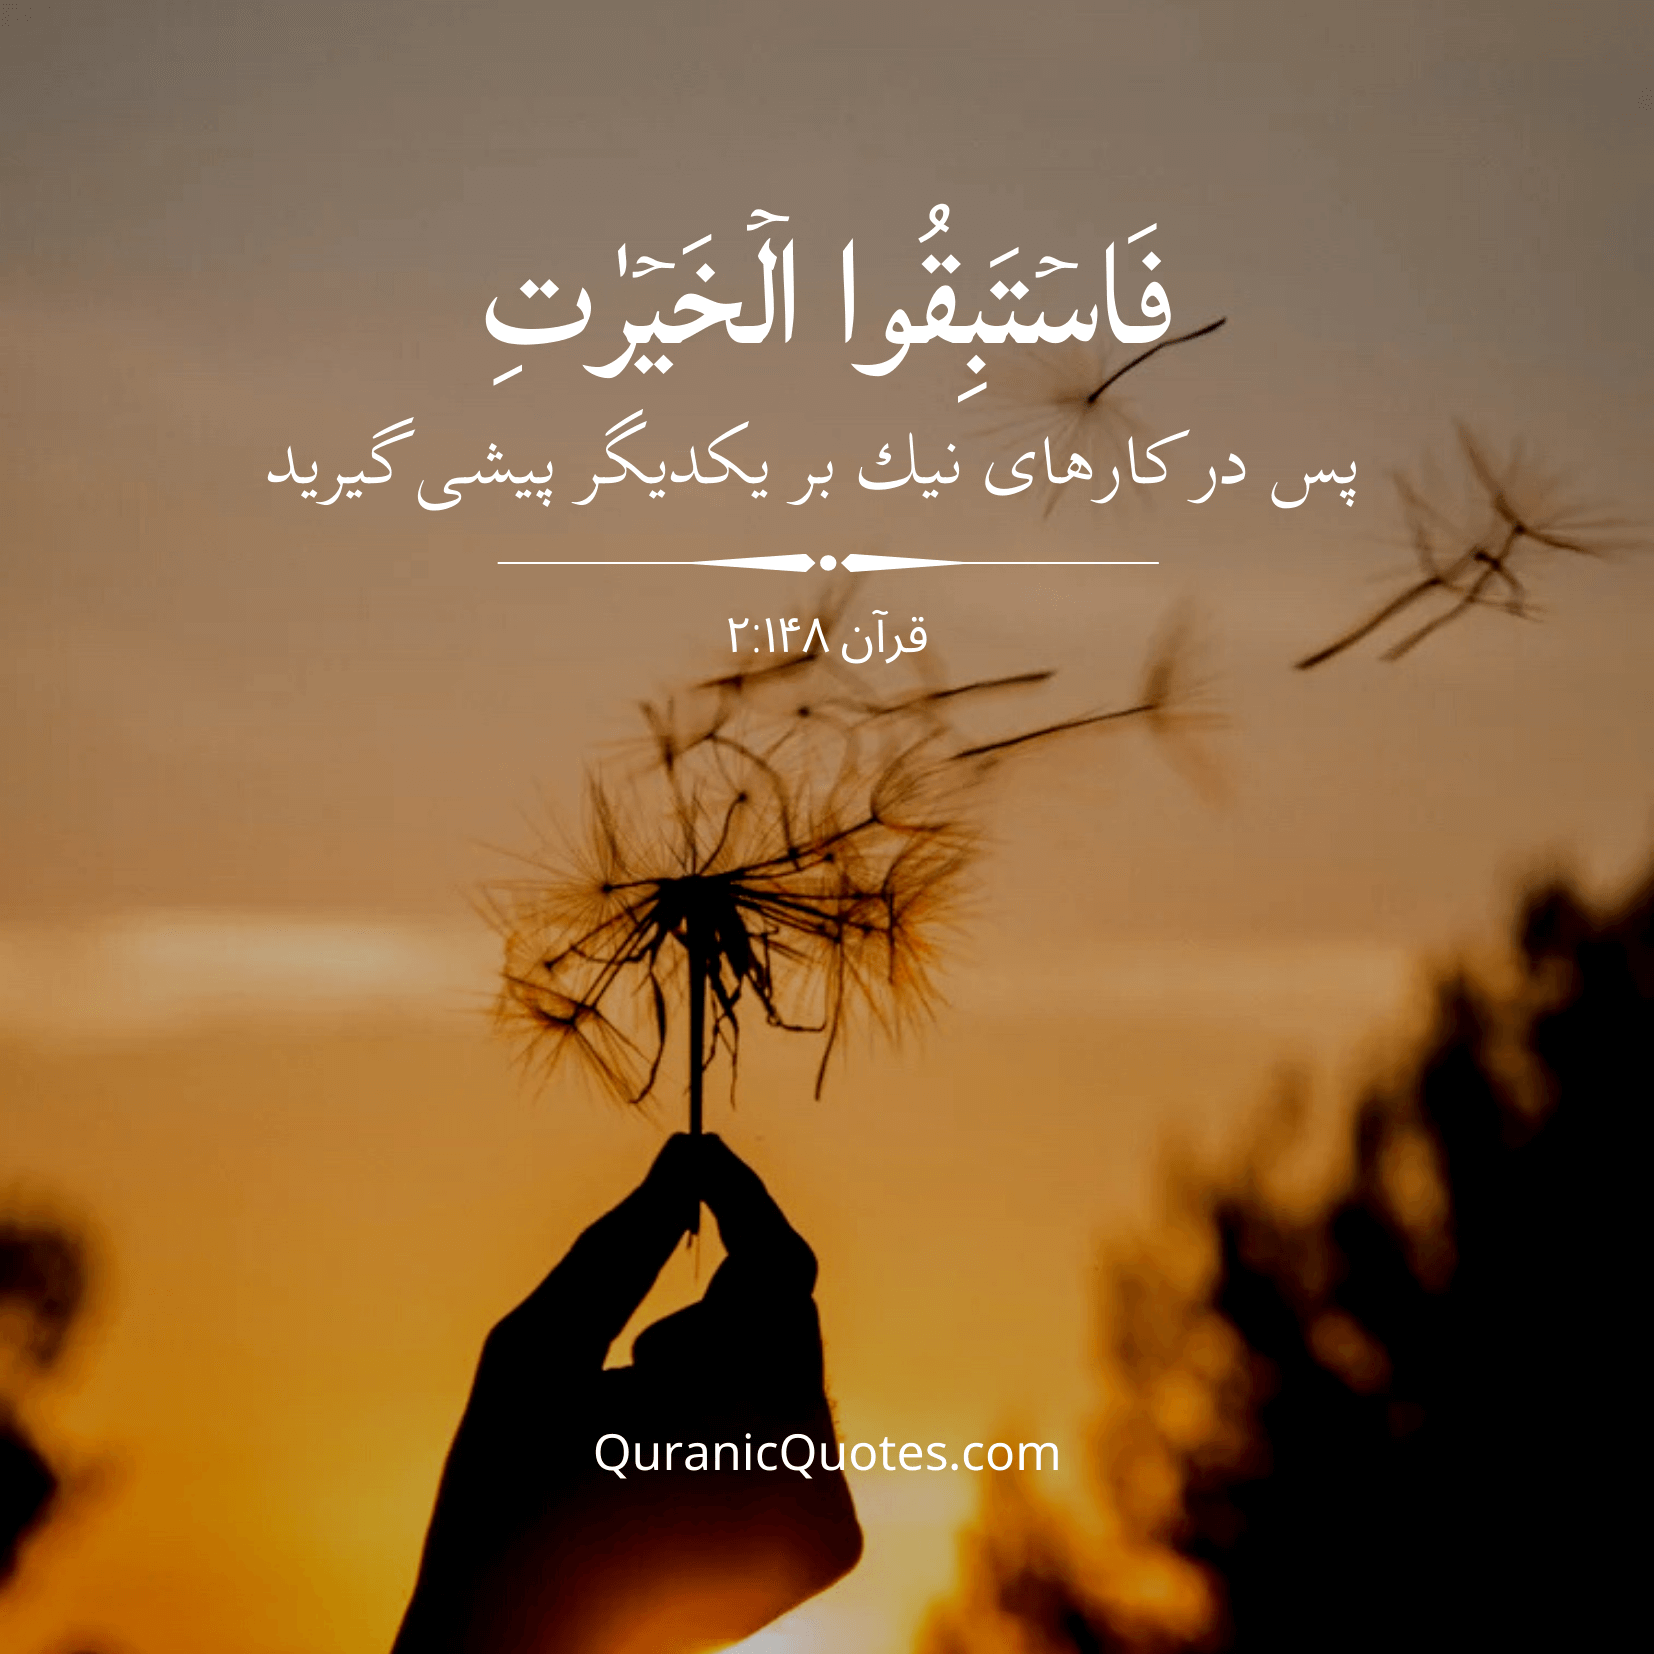 Quranic Quotes in Farsi 02:148